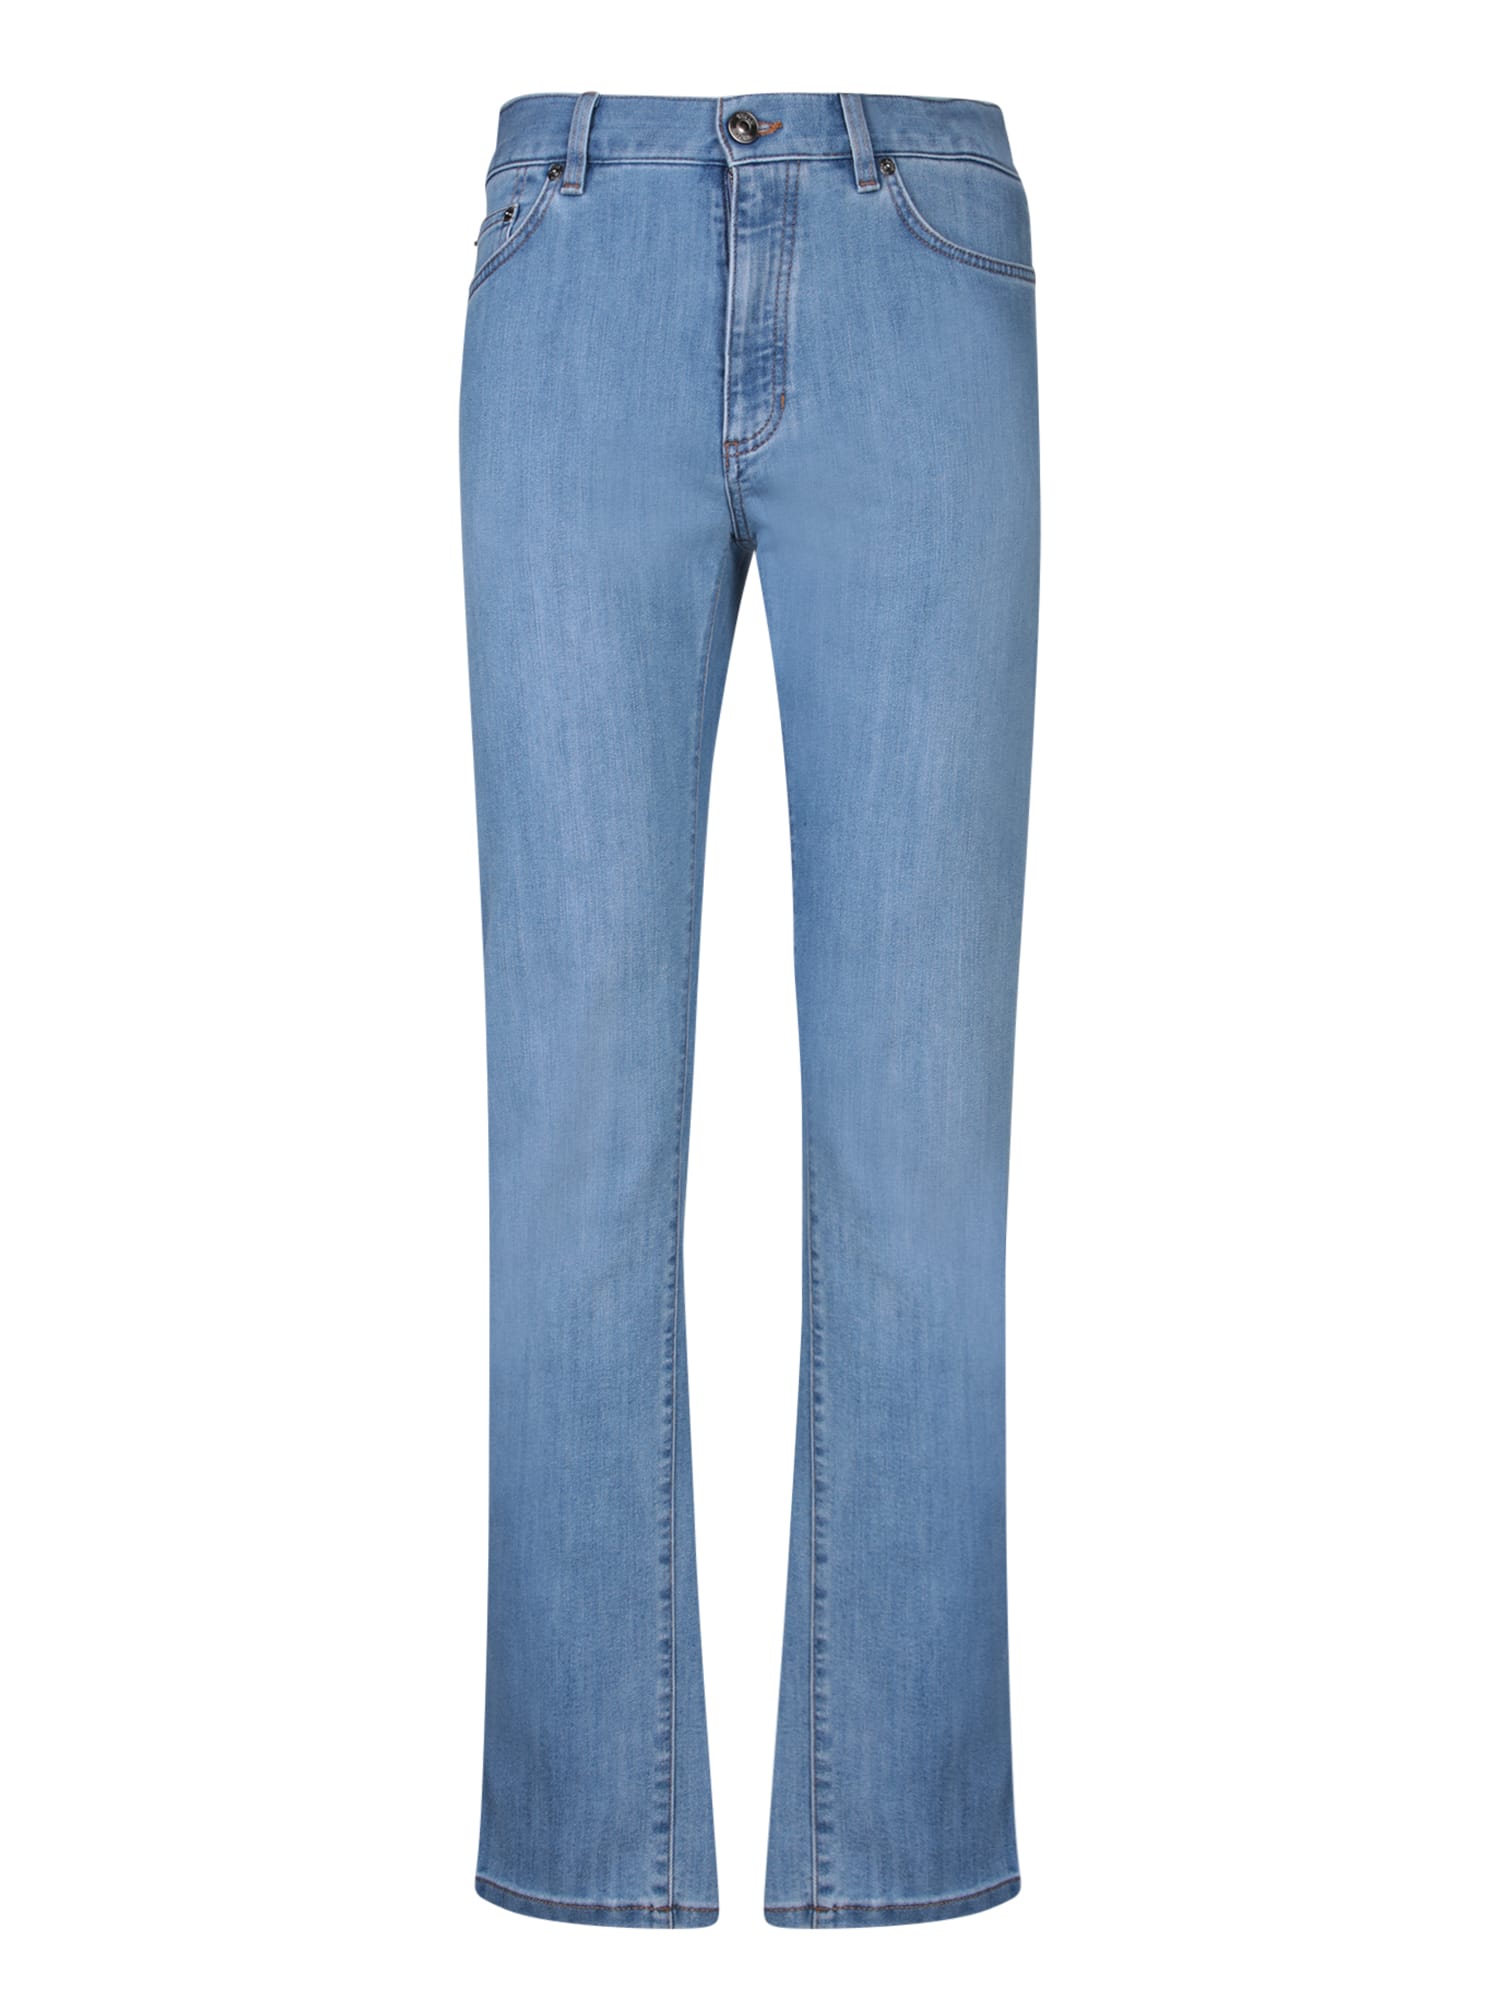 Shop Zegna City Denim Blue Jeans